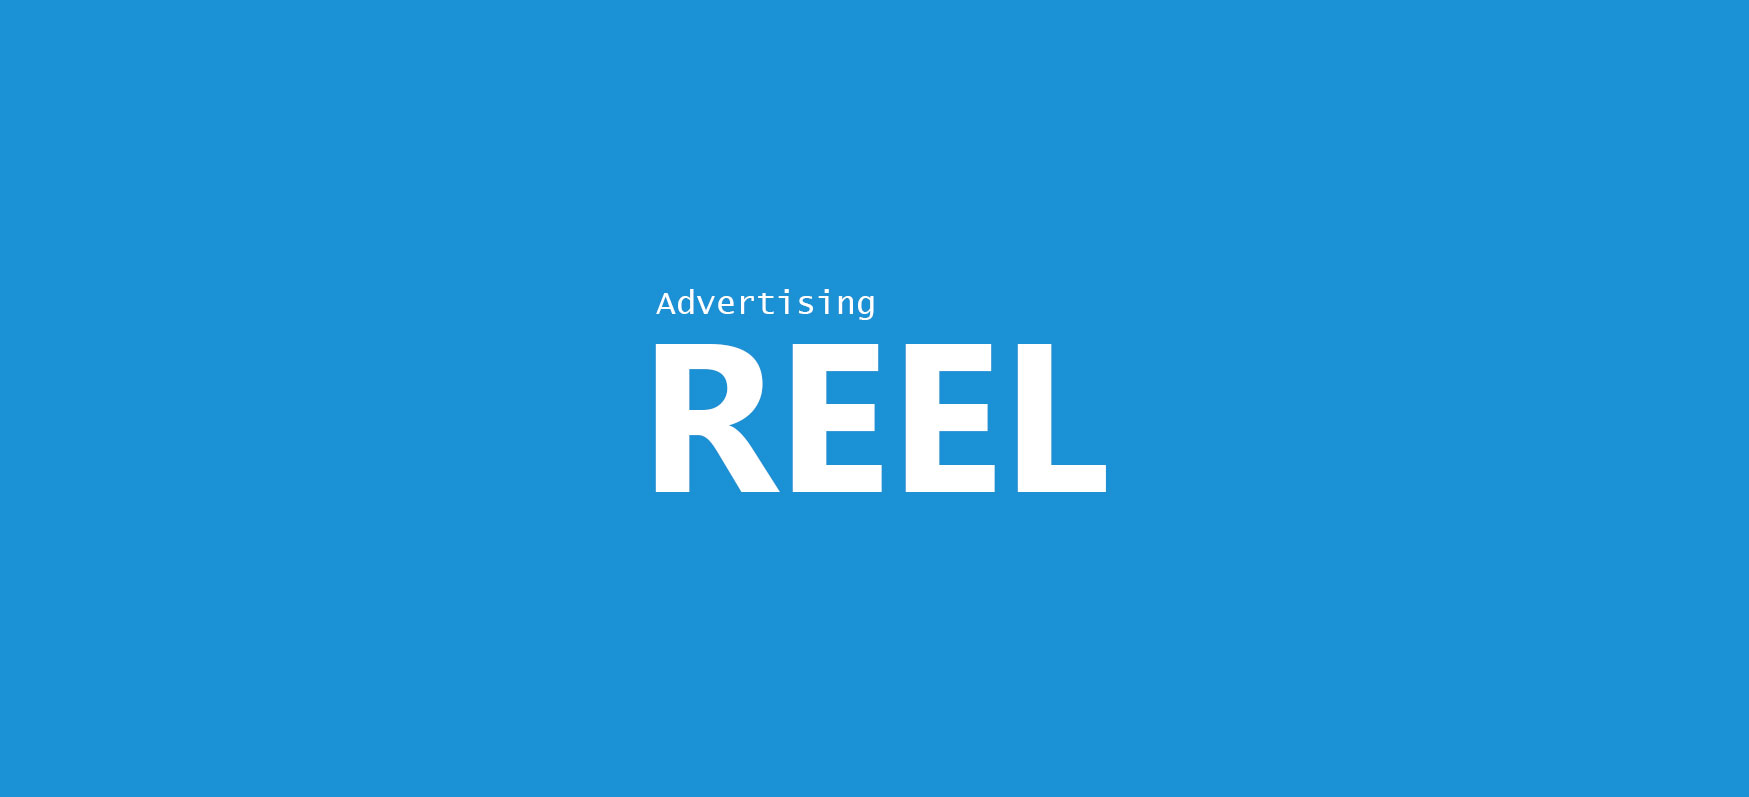 Advertising Reel